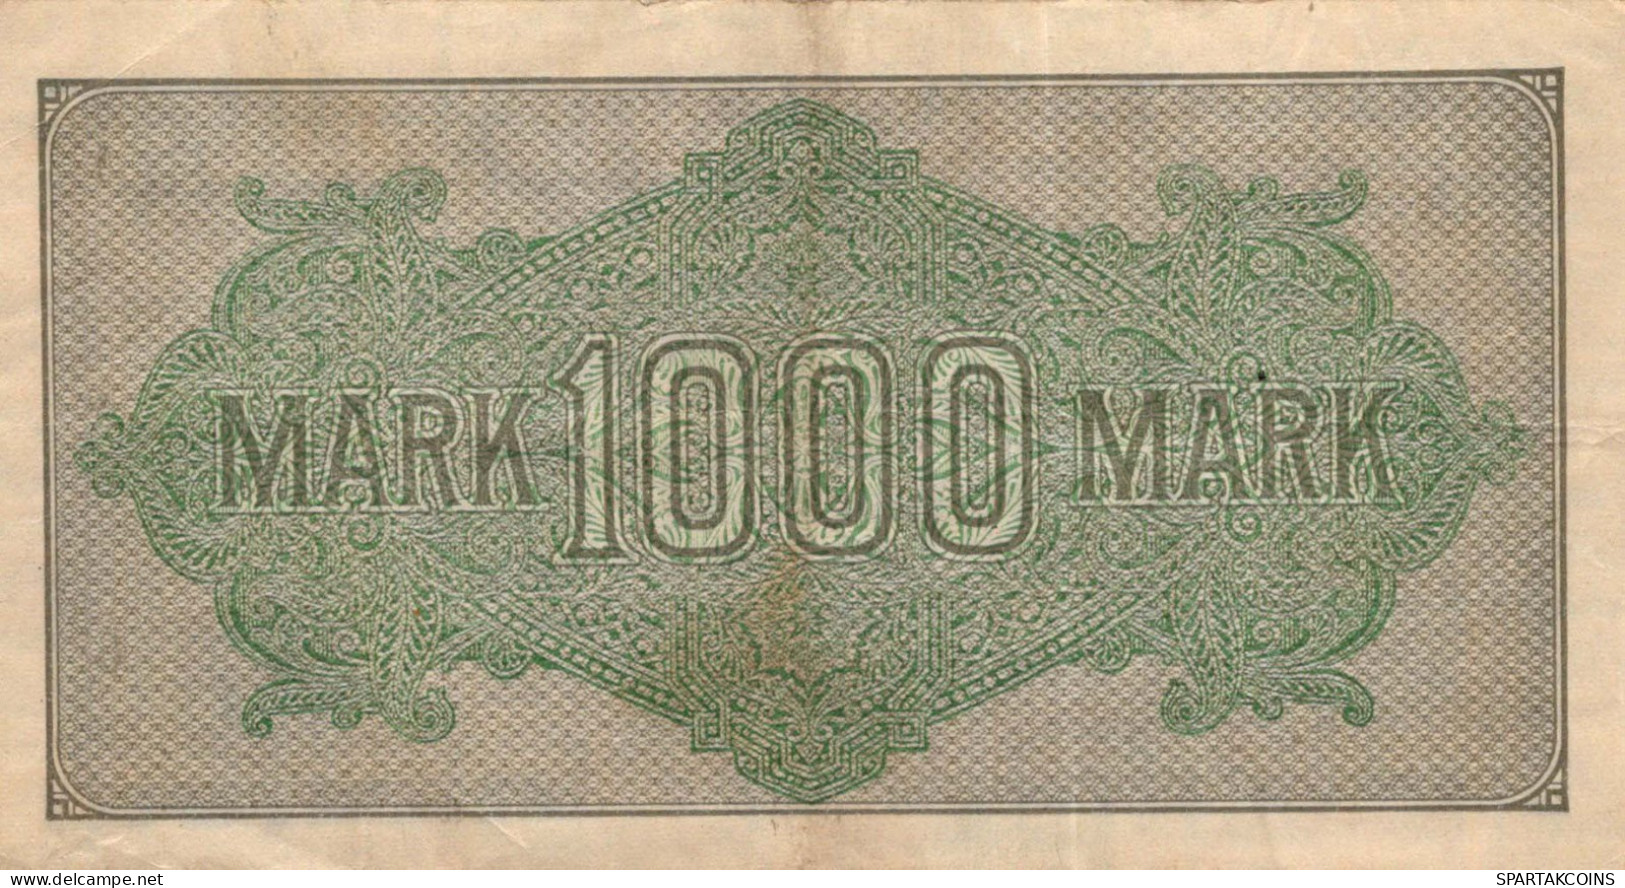 1000 MARK 1922 Stadt BERLIN DEUTSCHLAND Papiergeld Banknote #PL402 - [11] Emissions Locales